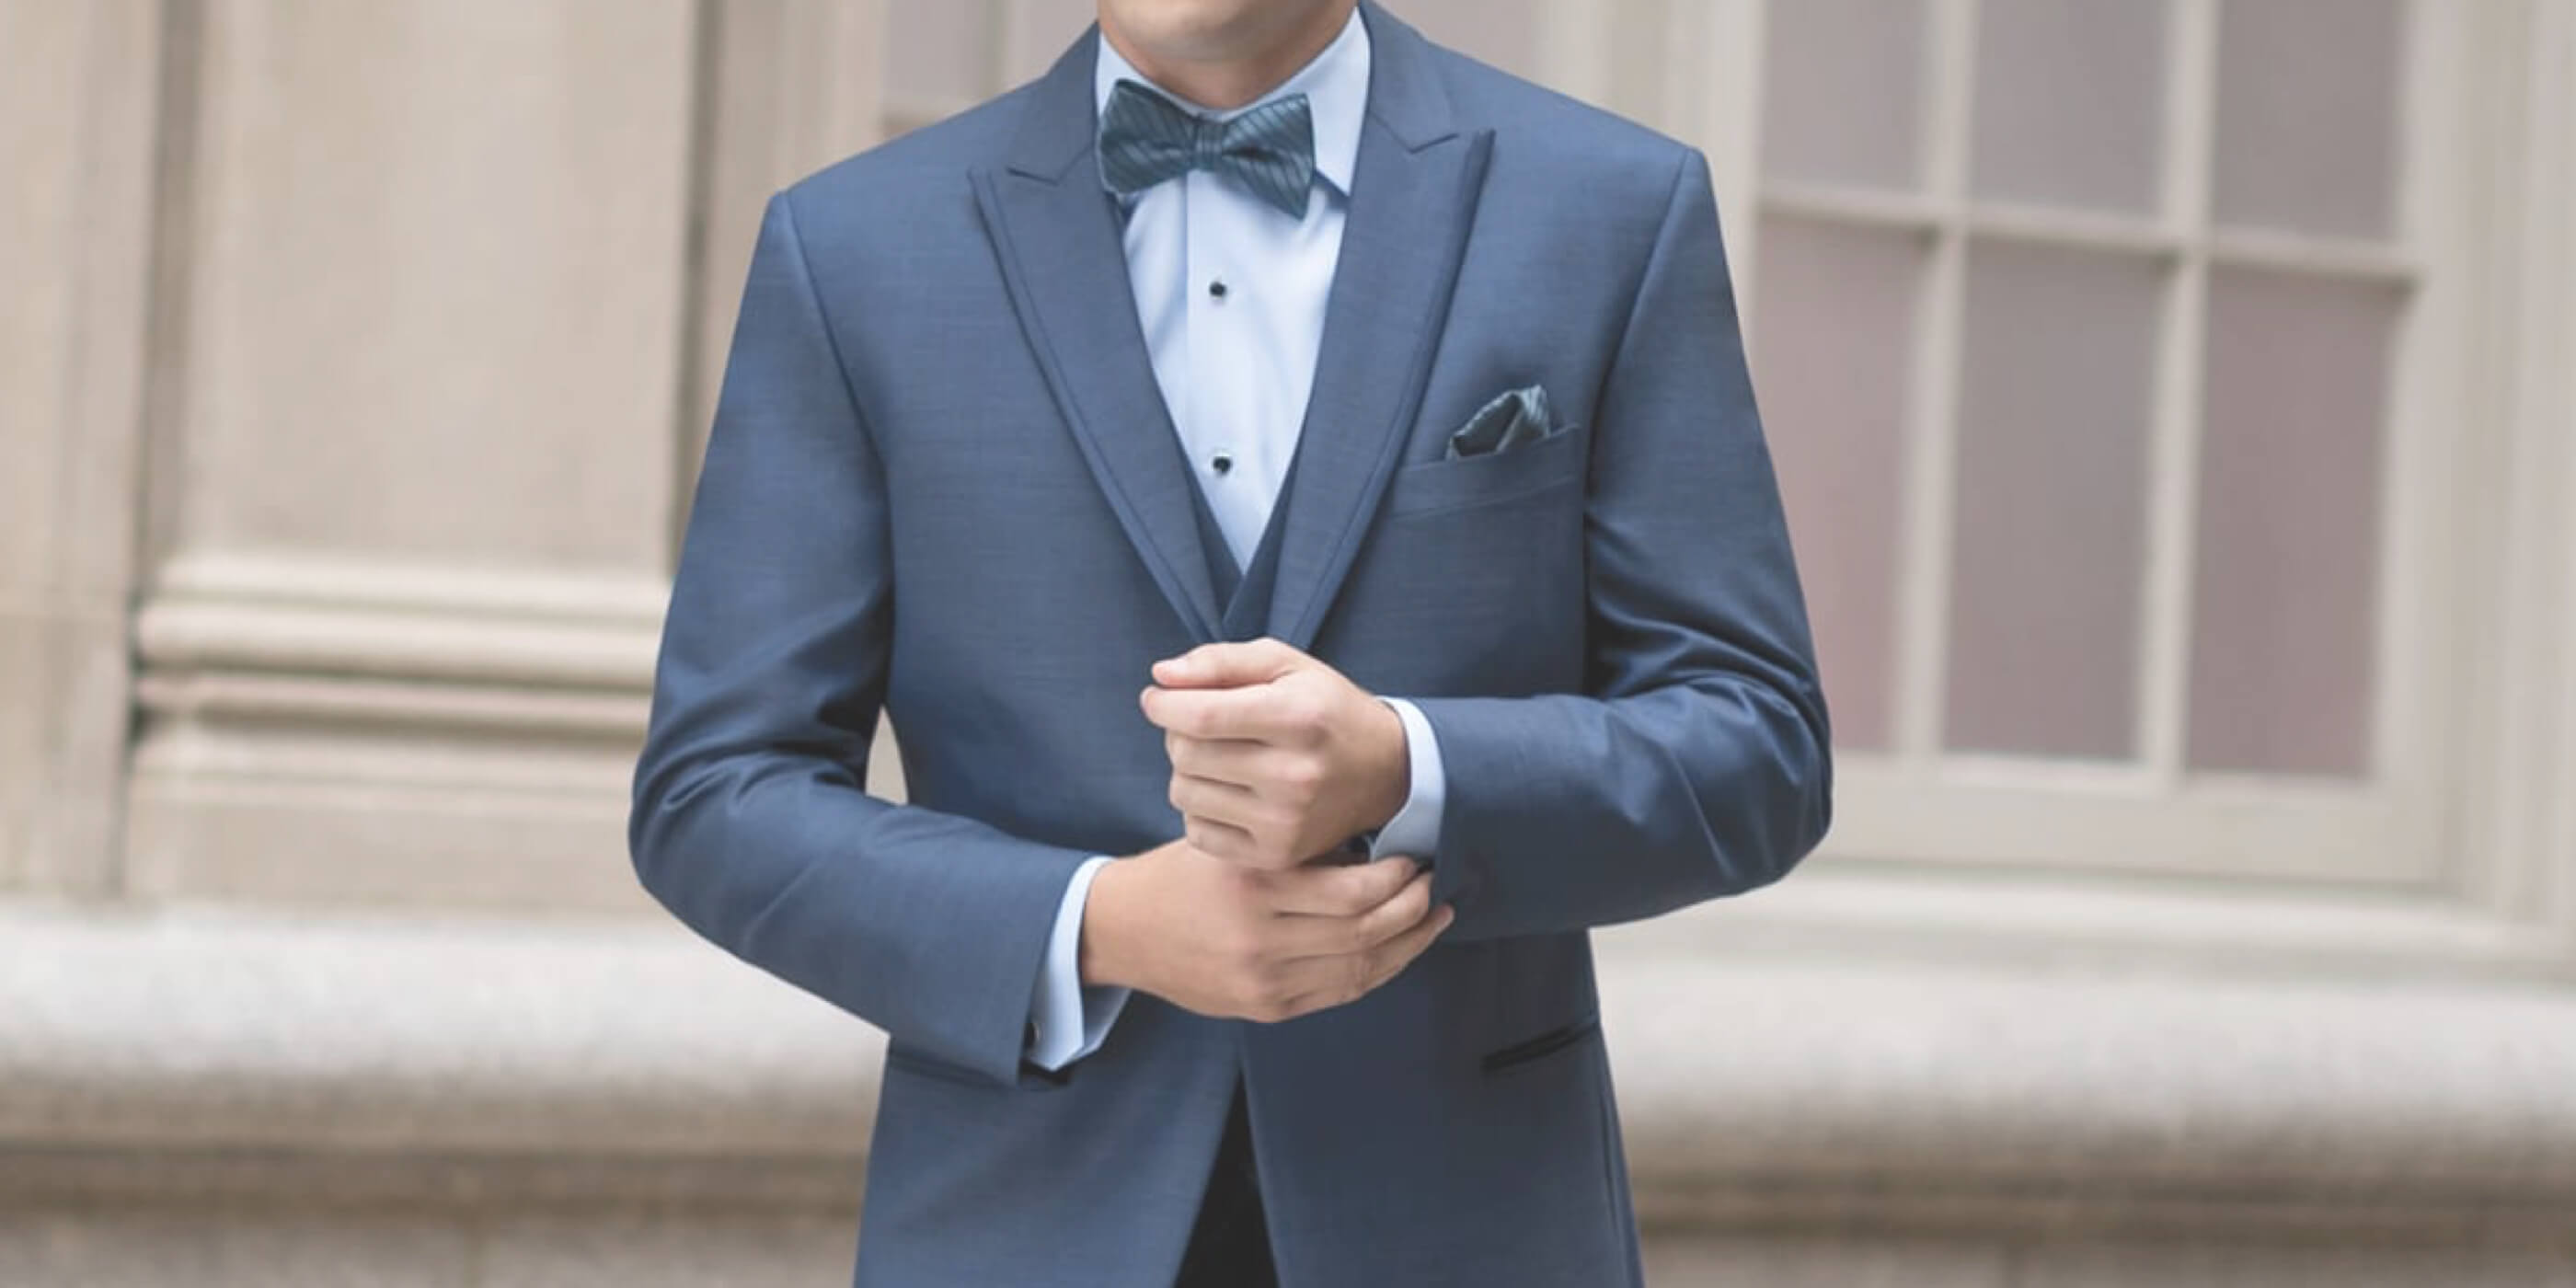 Model wearing a blue suit